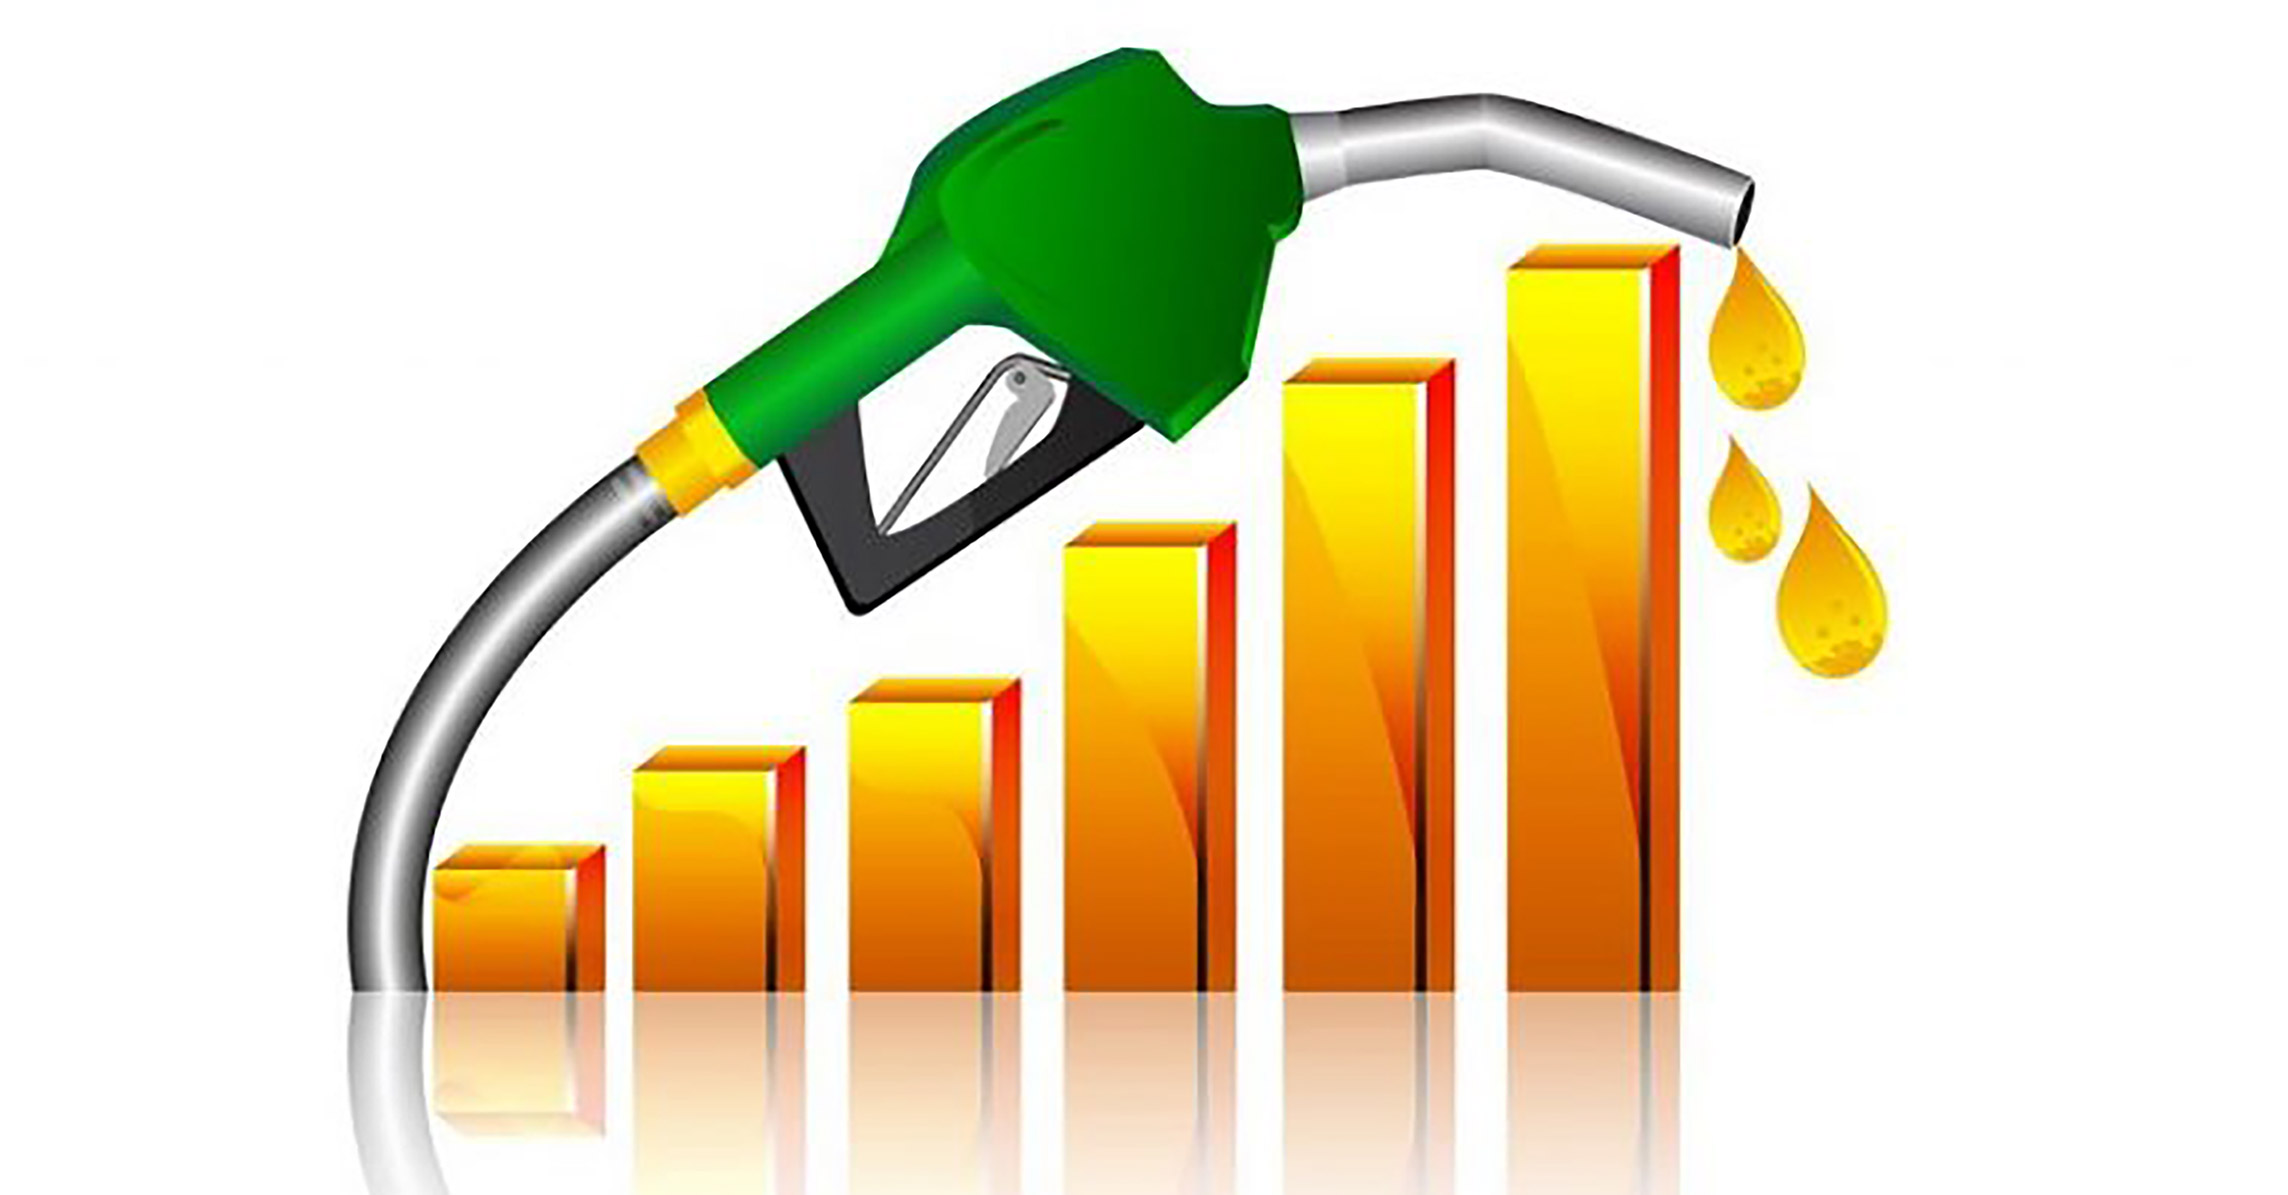  किन सधैं बढ्छ पेट्रोलियम पदार्थको मूल्य ?